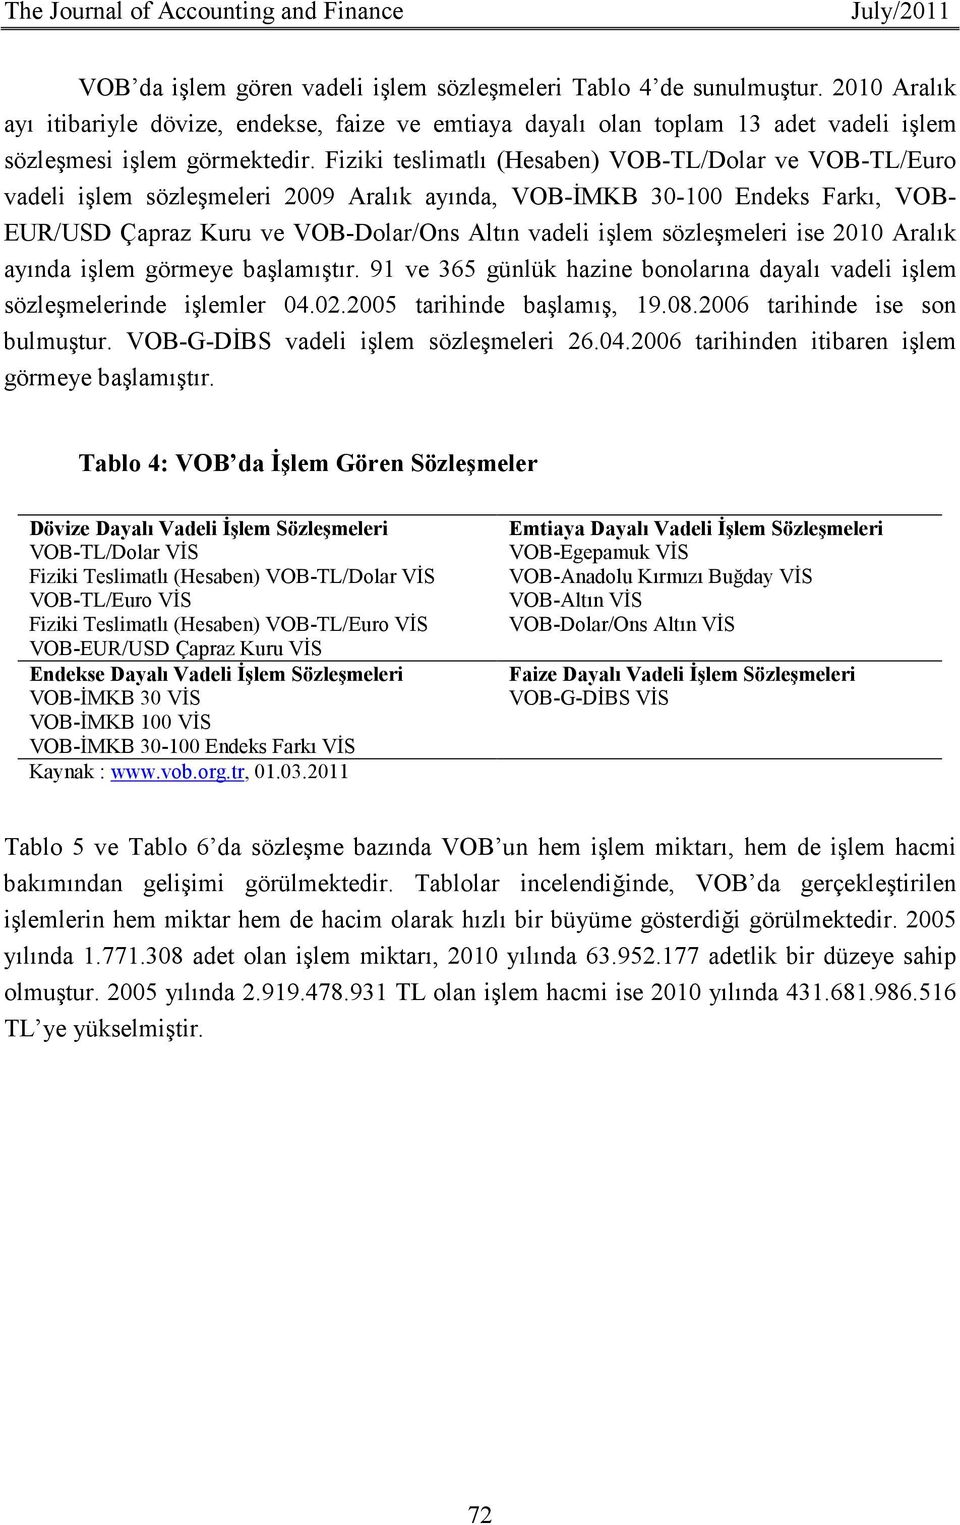 Fiziki teslimatlı (Hesaben) VOB-TL/Dolar ve VOB-TL/Euro vadeli işlem sözleşmeleri 2009 Aralık ayında, VOB-ĐMKB 30-100 Endeks Farkı, VOB- EUR/USD Çapraz Kuru ve VOB-Dolar/Ons Altın vadeli işlem